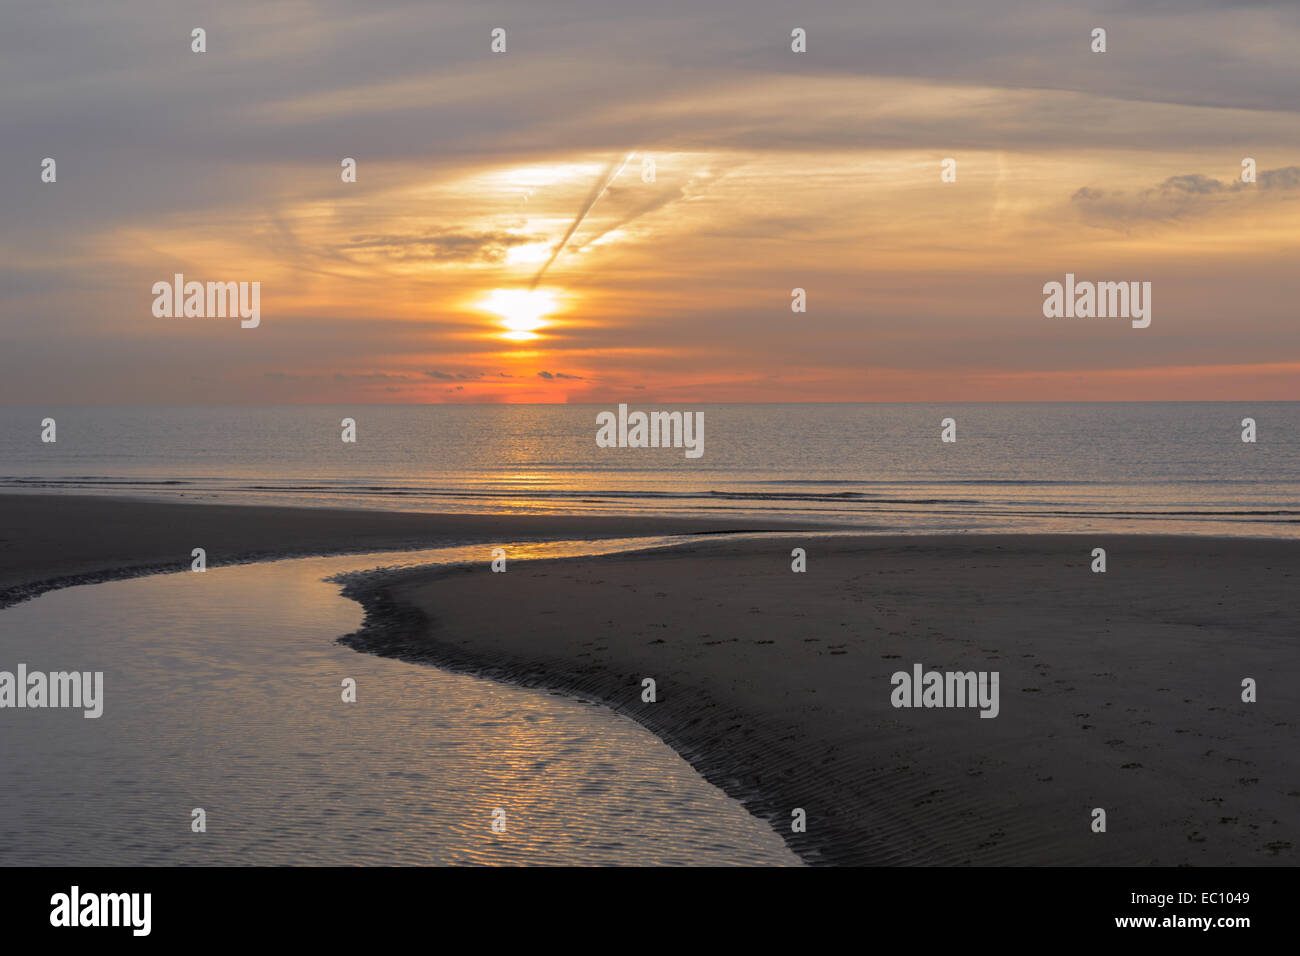 La mattina presto sorgere del sole sulla spiaggia con la bassa marea raffigurante un meraviglioso paesaggio marino all'alba Foto Stock